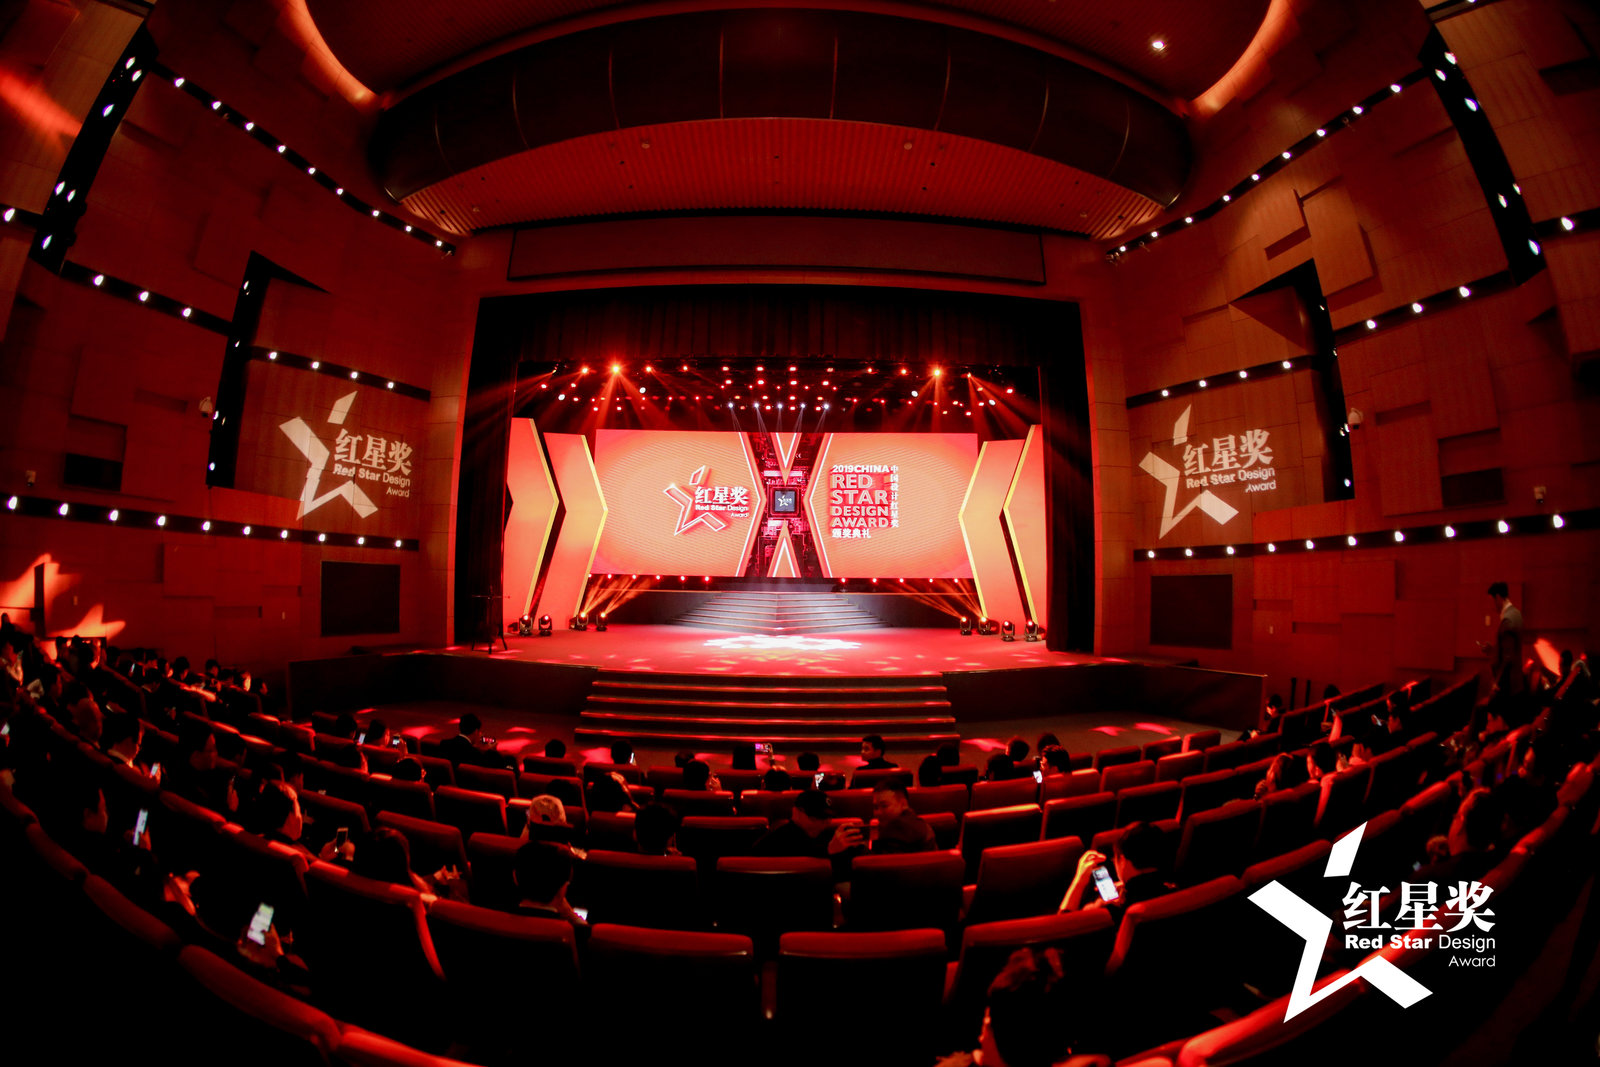 元征X-431 移动诊断中心喜提中国设计界“奥斯卡”红星奖